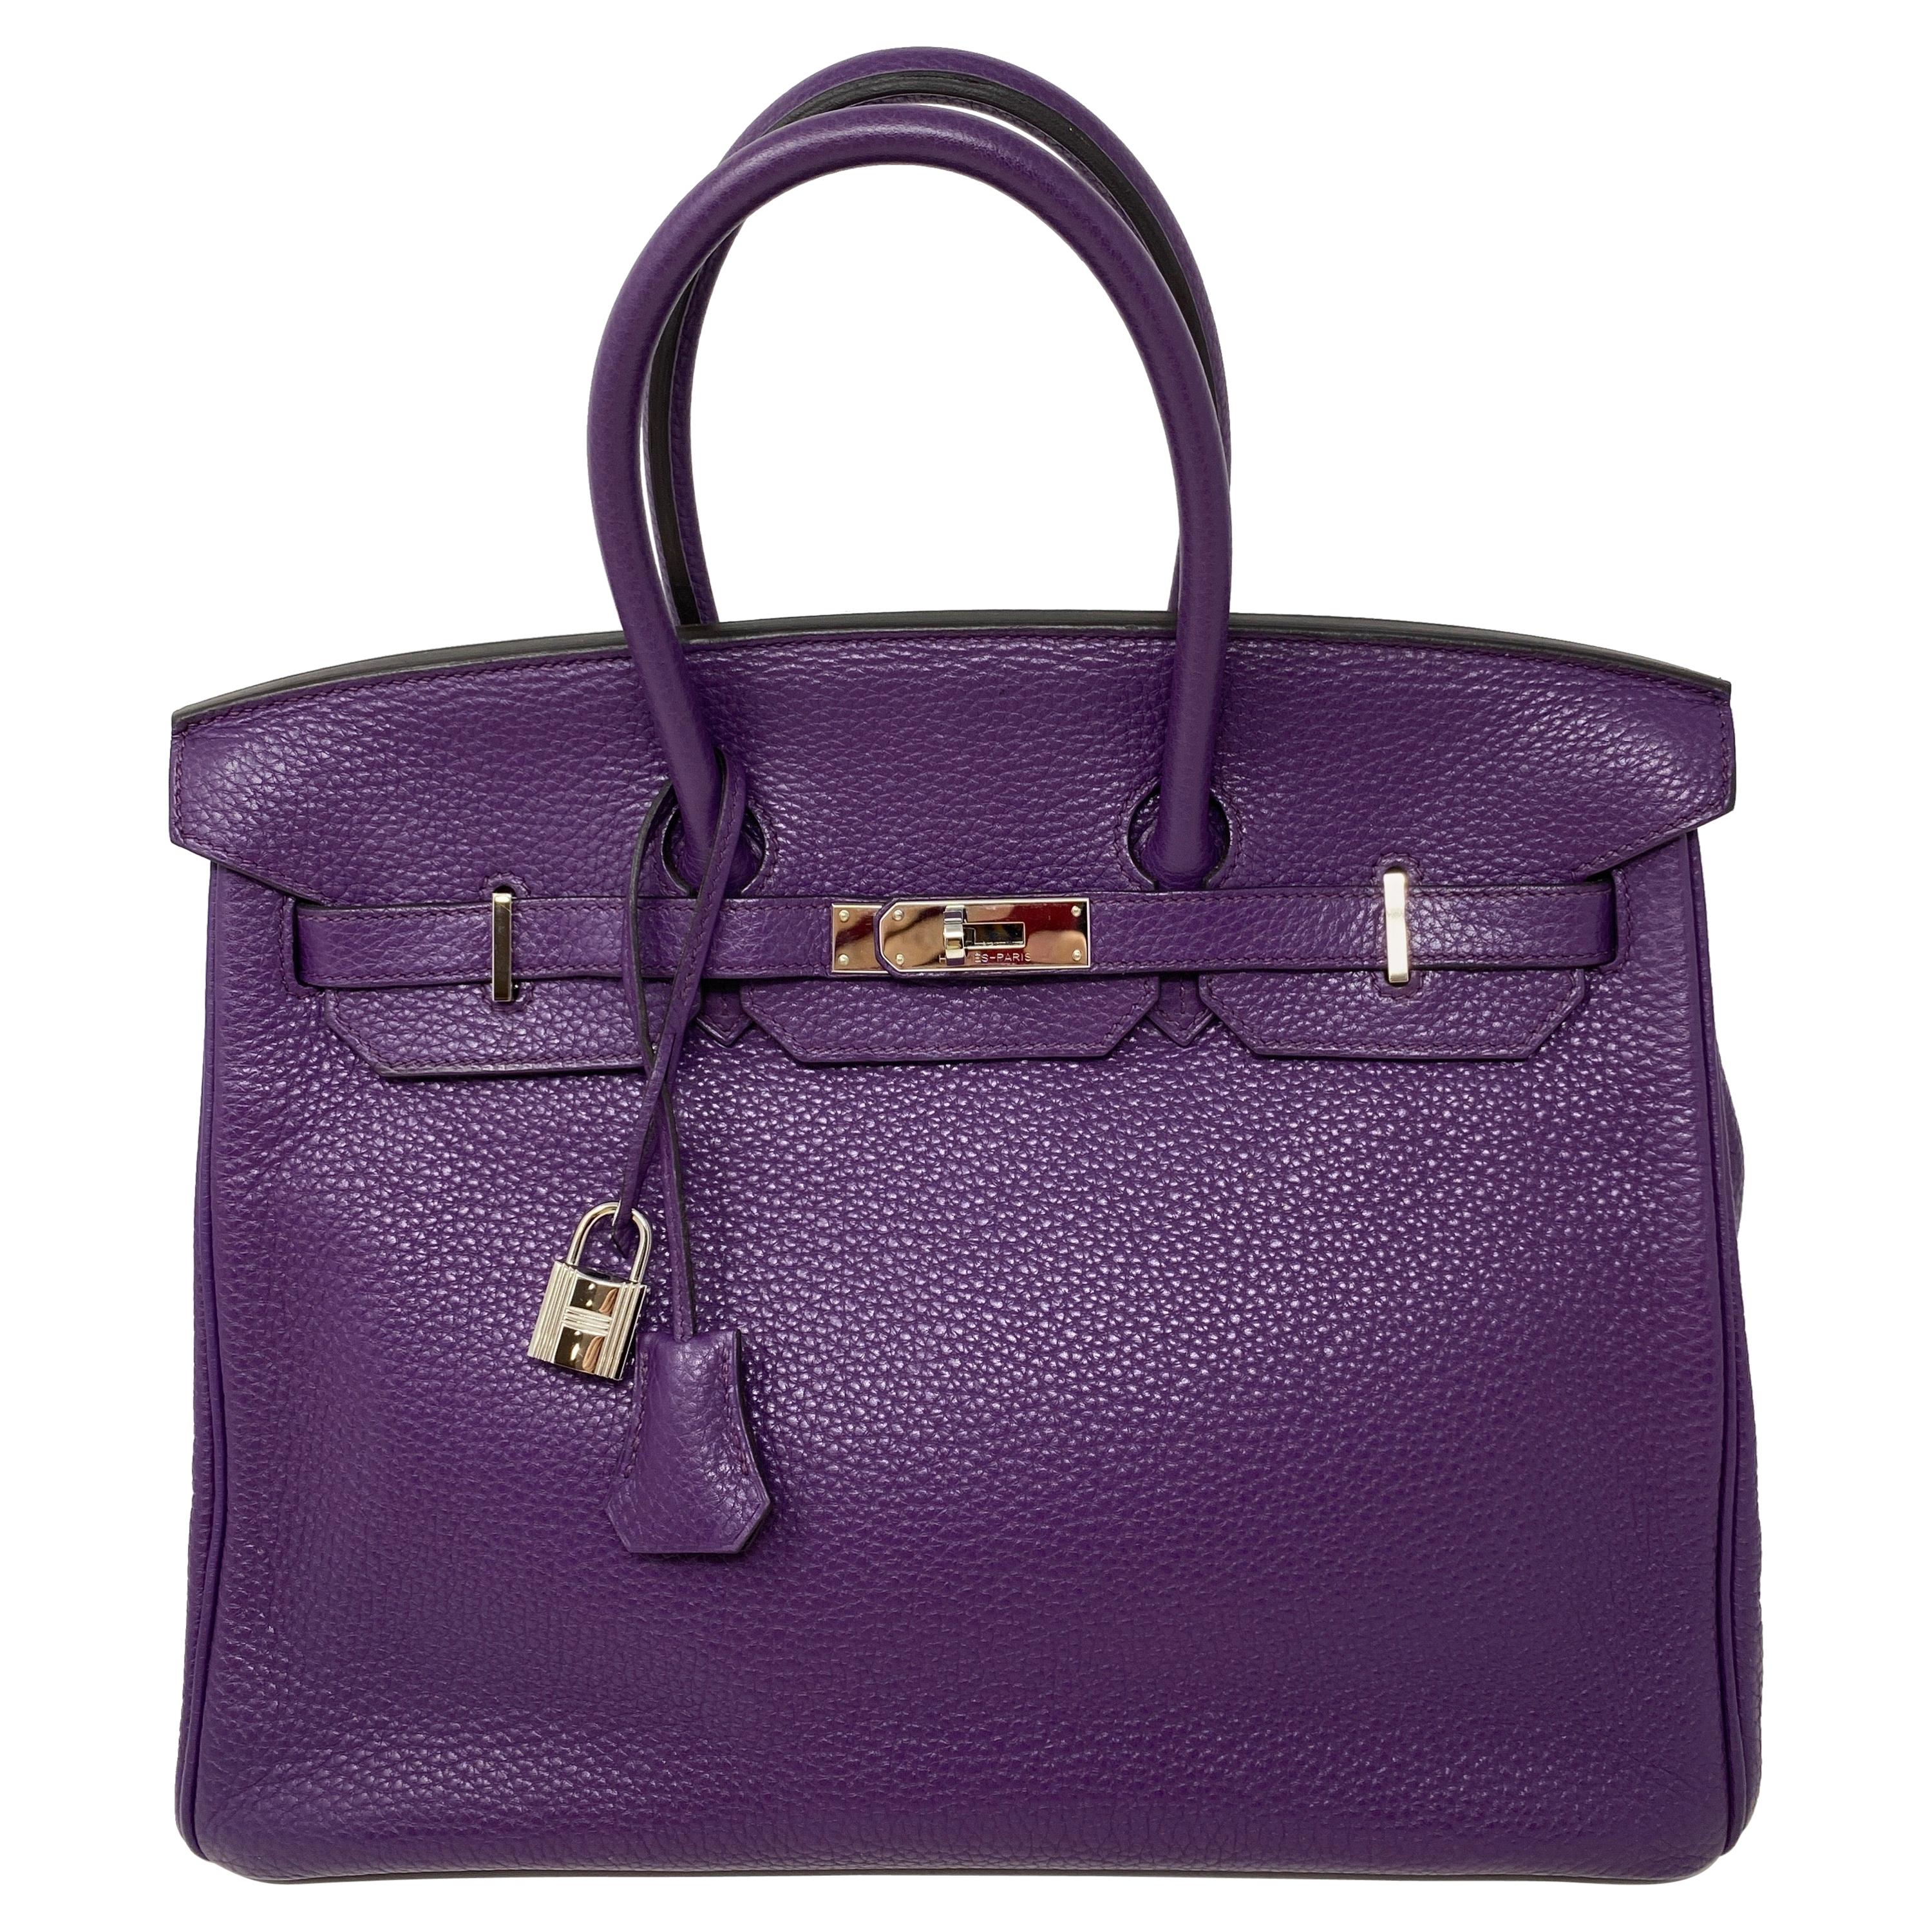 Hermes Birkin Ultraviolet 35 Bag